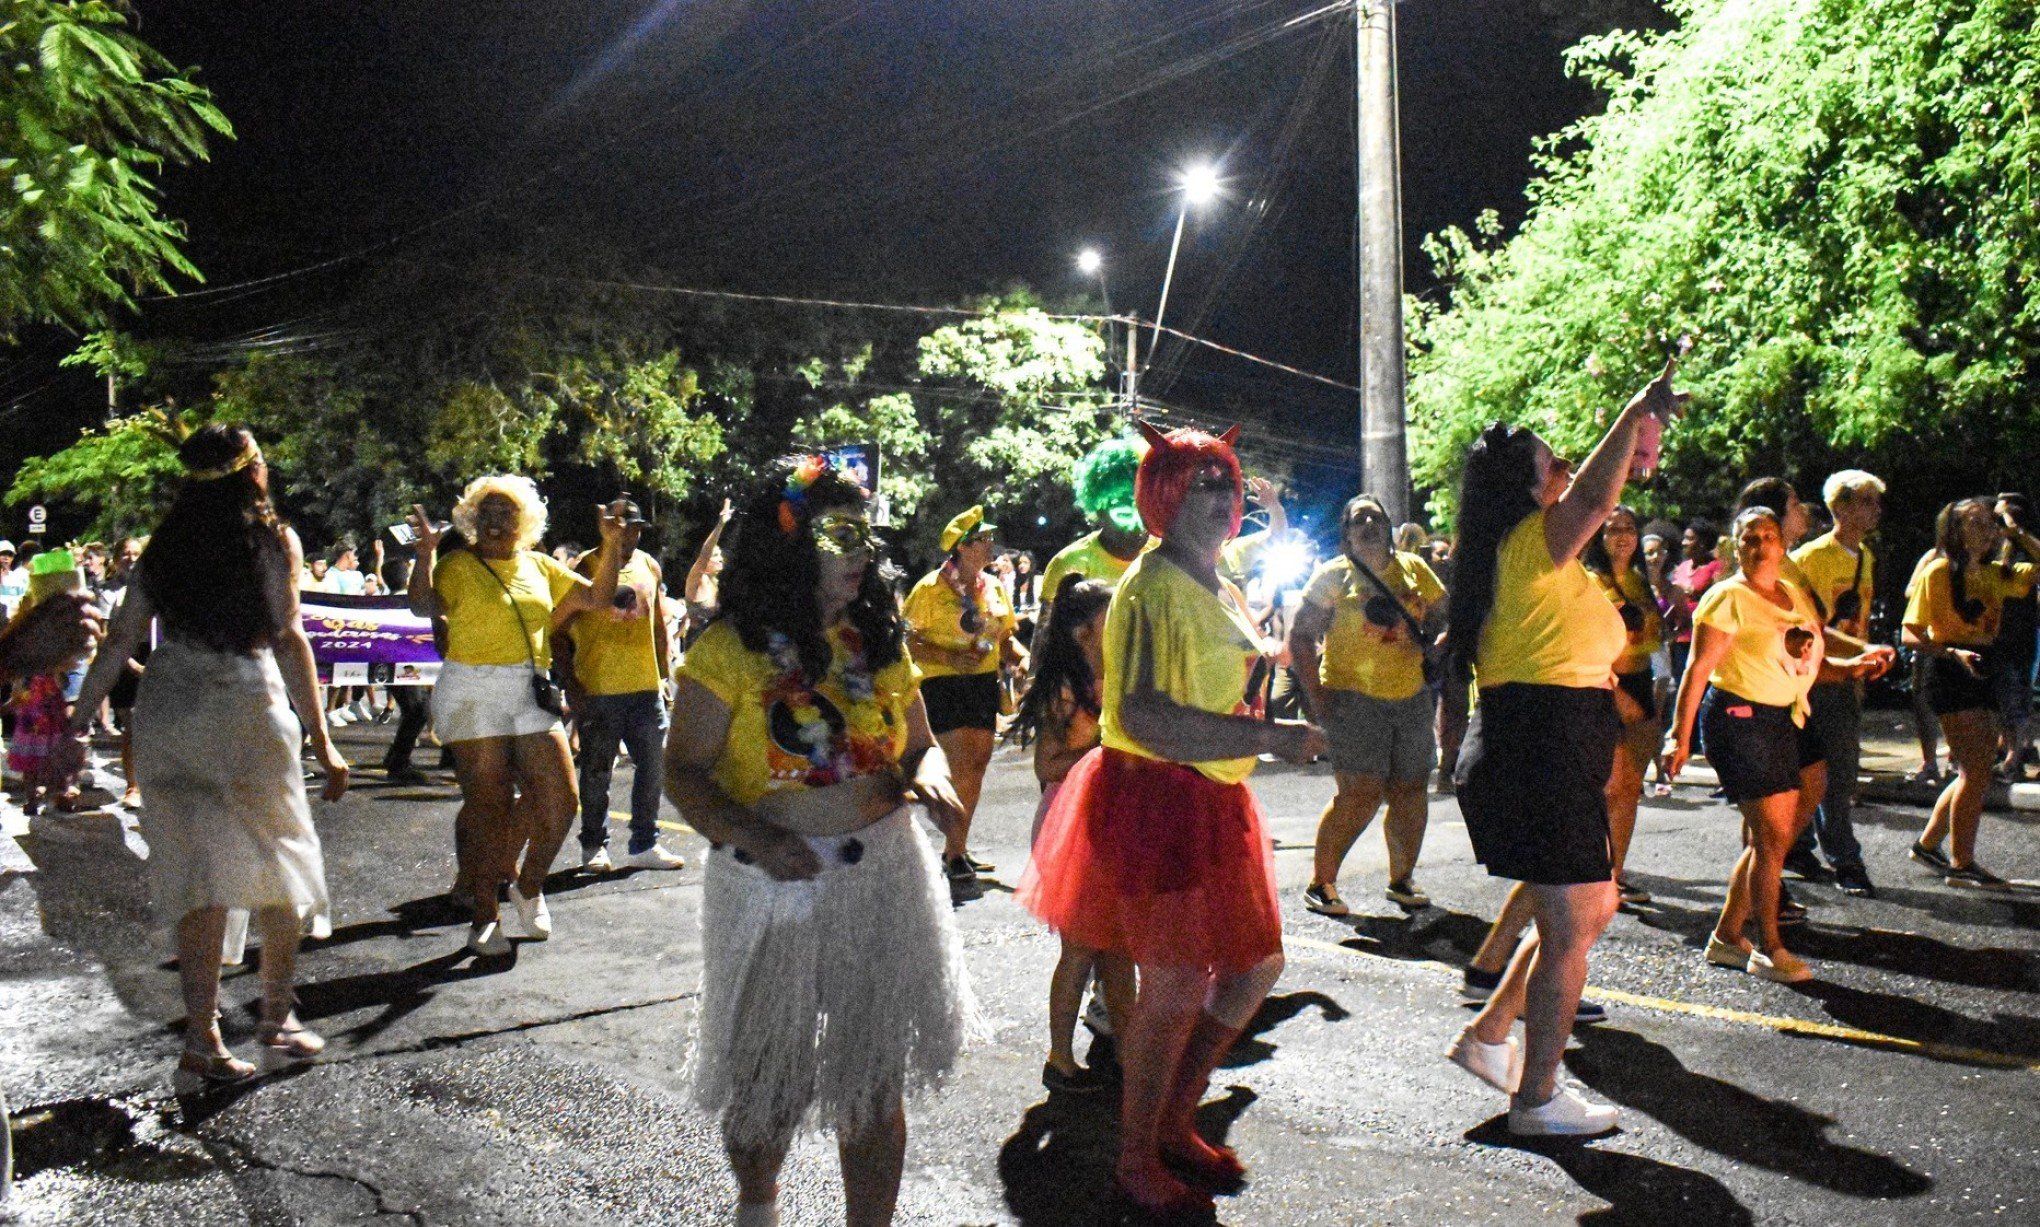 Portão realiza o seu carnaval de rua focado em levar alegria e fazer o bem